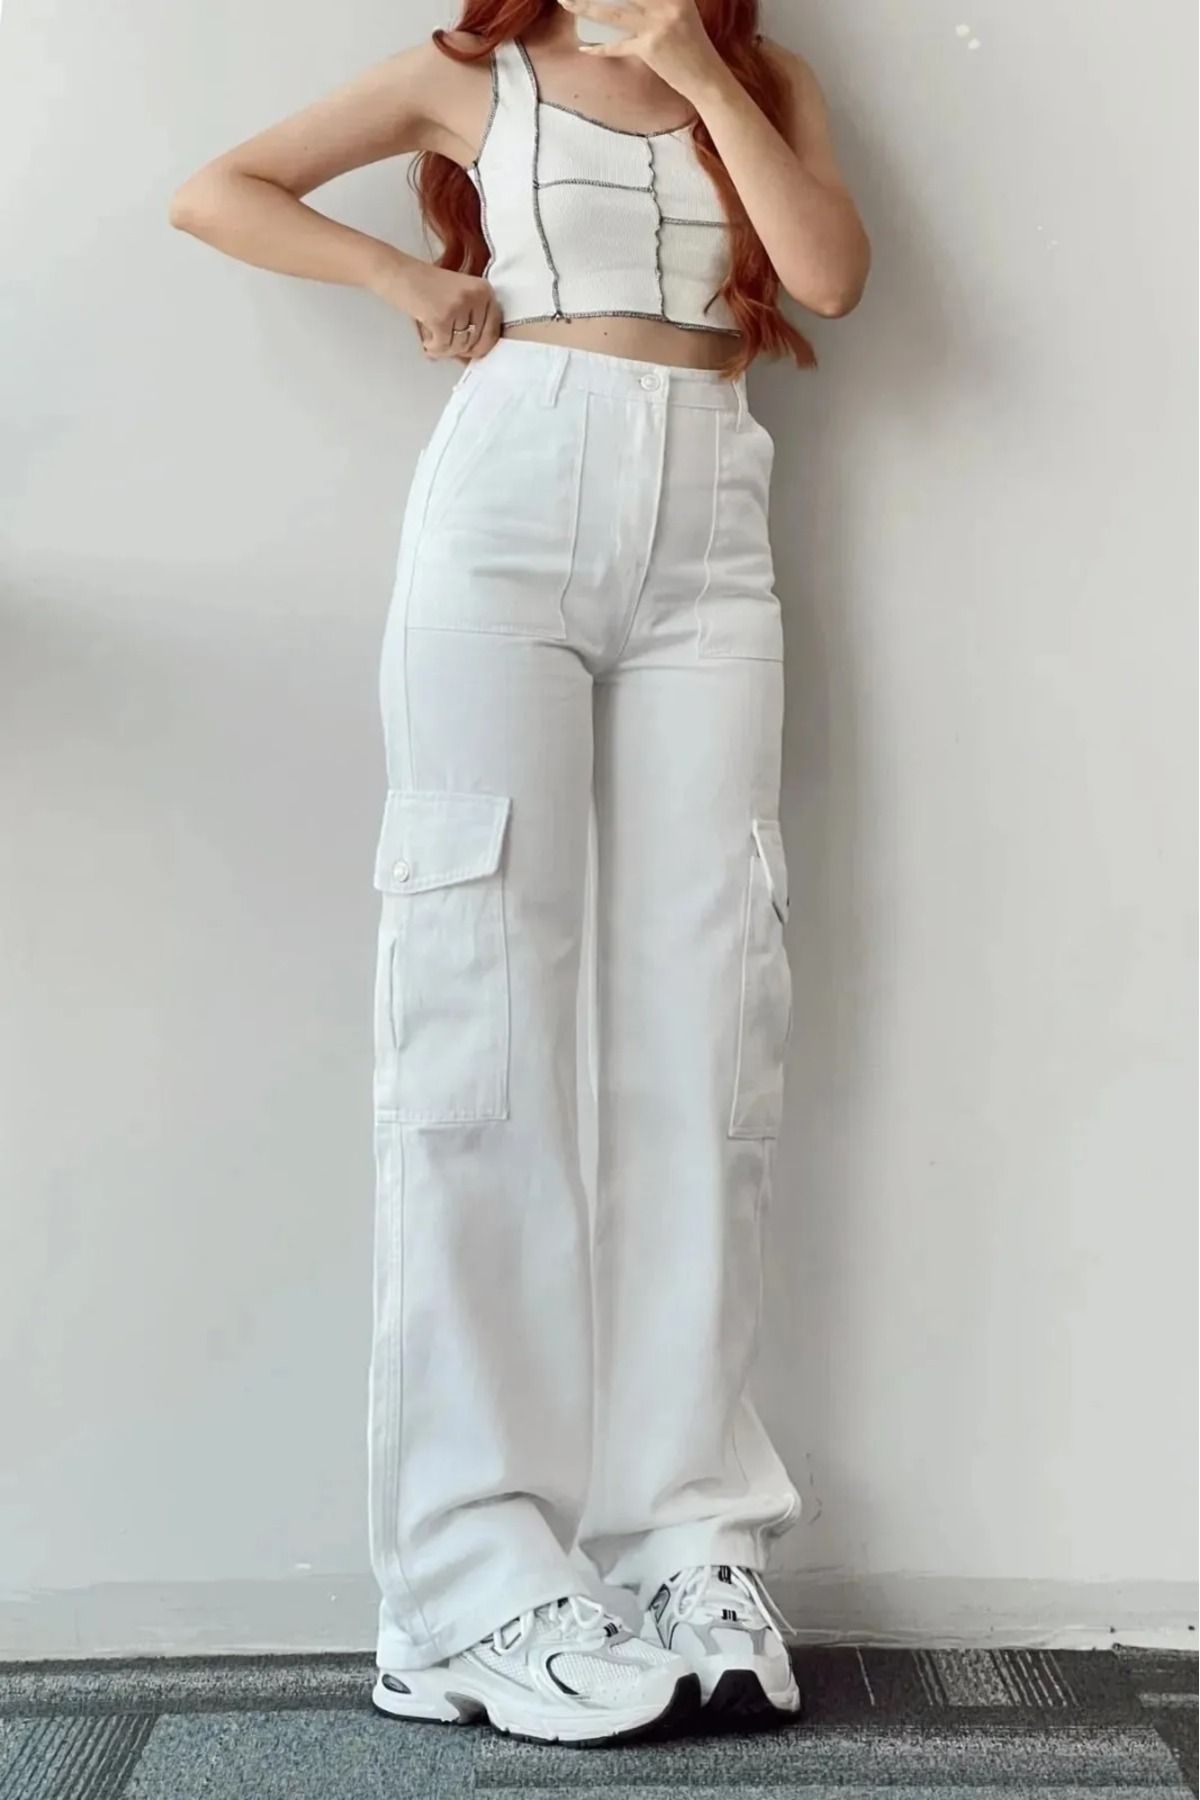 LİMABEL Yüksek Bel Kargo Cepli Beyaz Jeans Kadın Çok Cepli Kargo Kot Pantolon